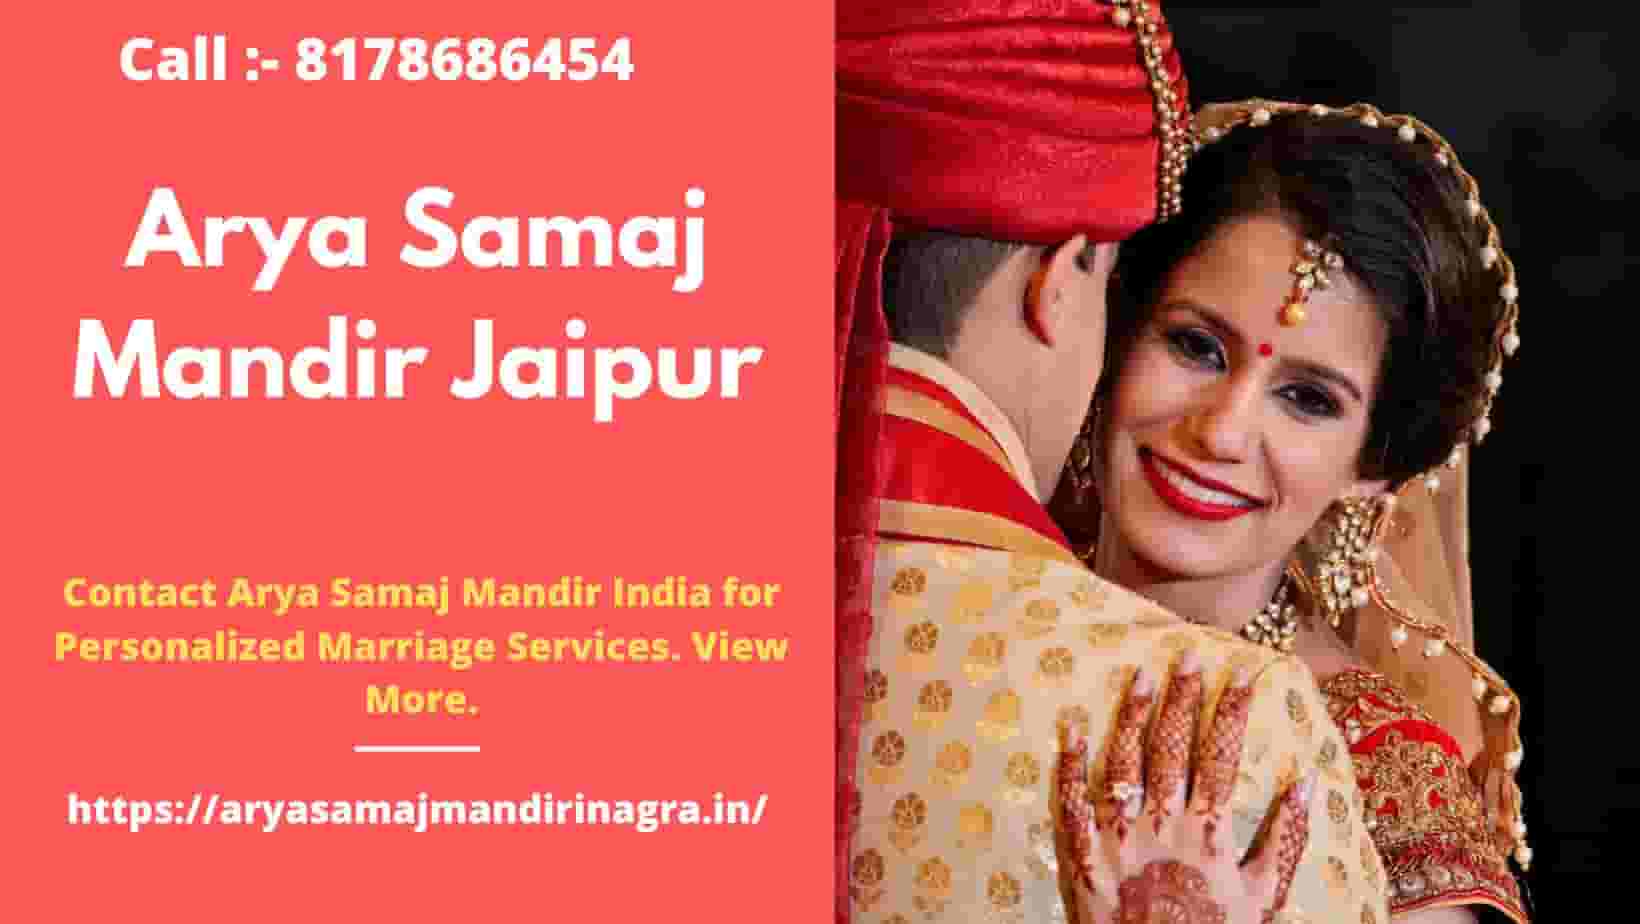 Arya Samaj Mandir Jaipur - Call 8178686454 - @ Rs.1100